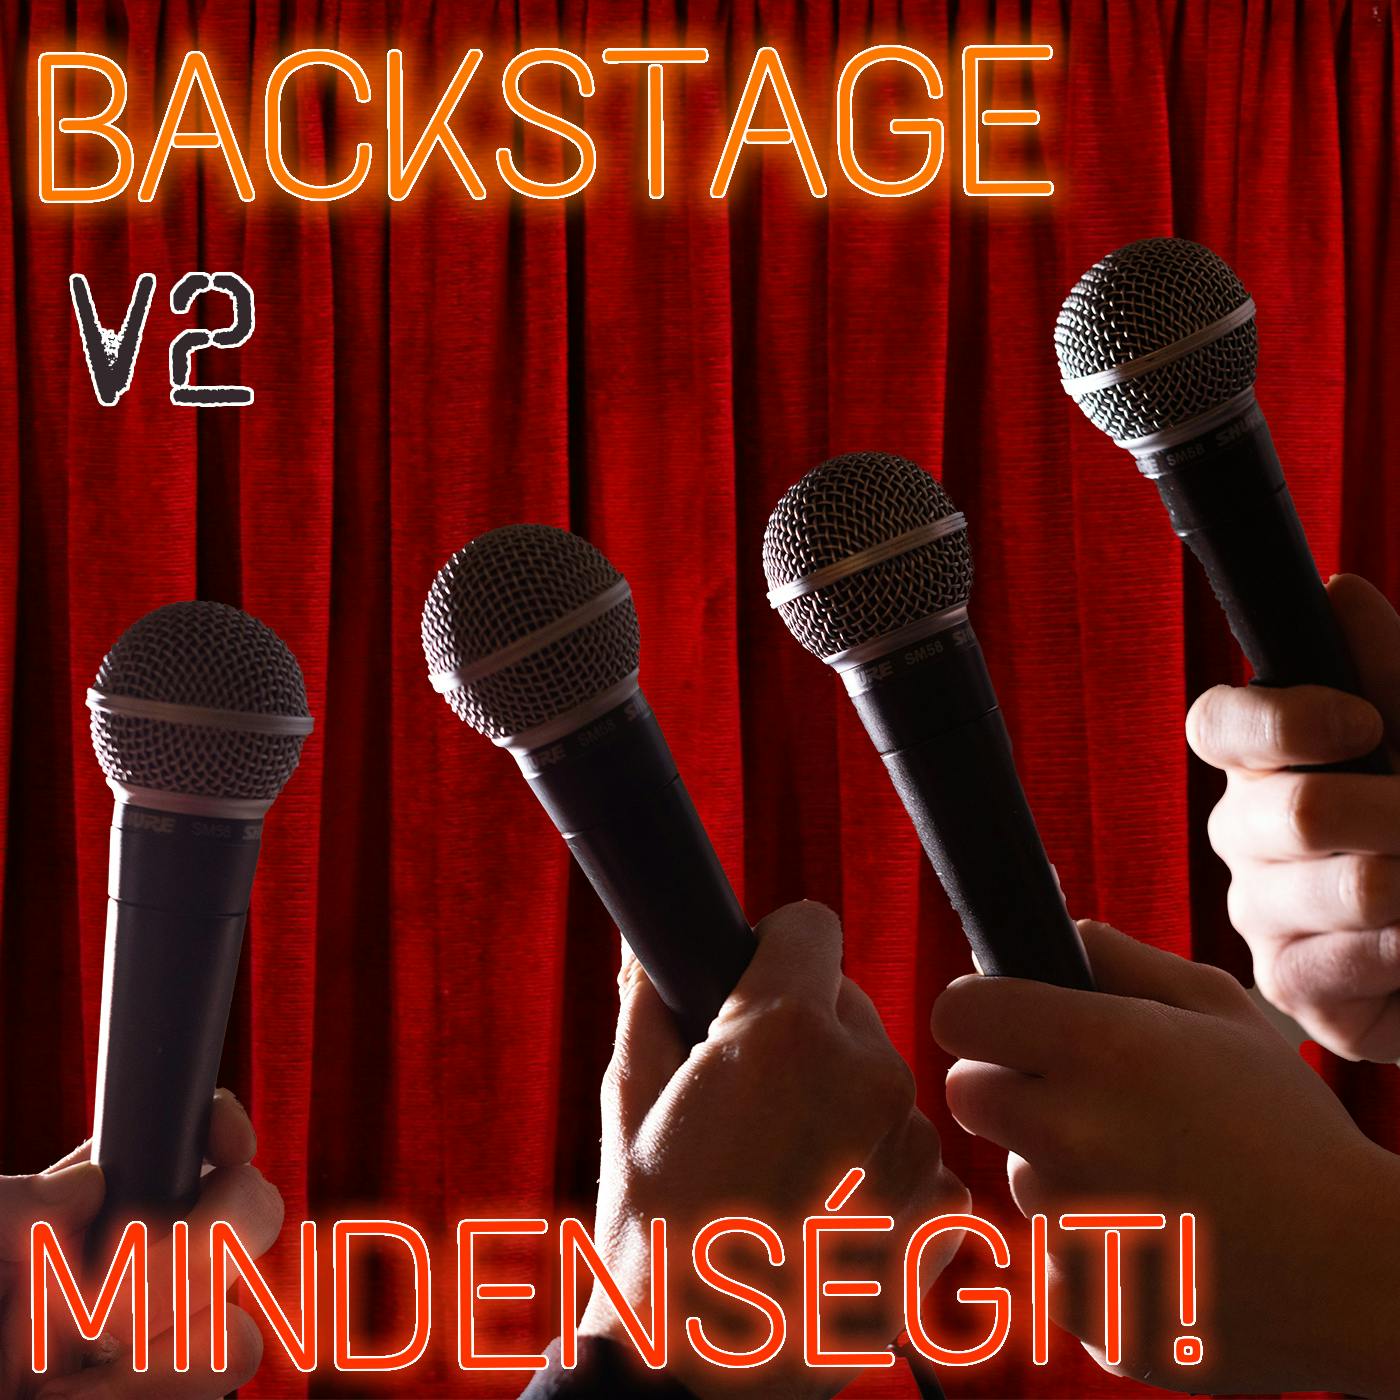 v2 - Mindenségit! Backstage